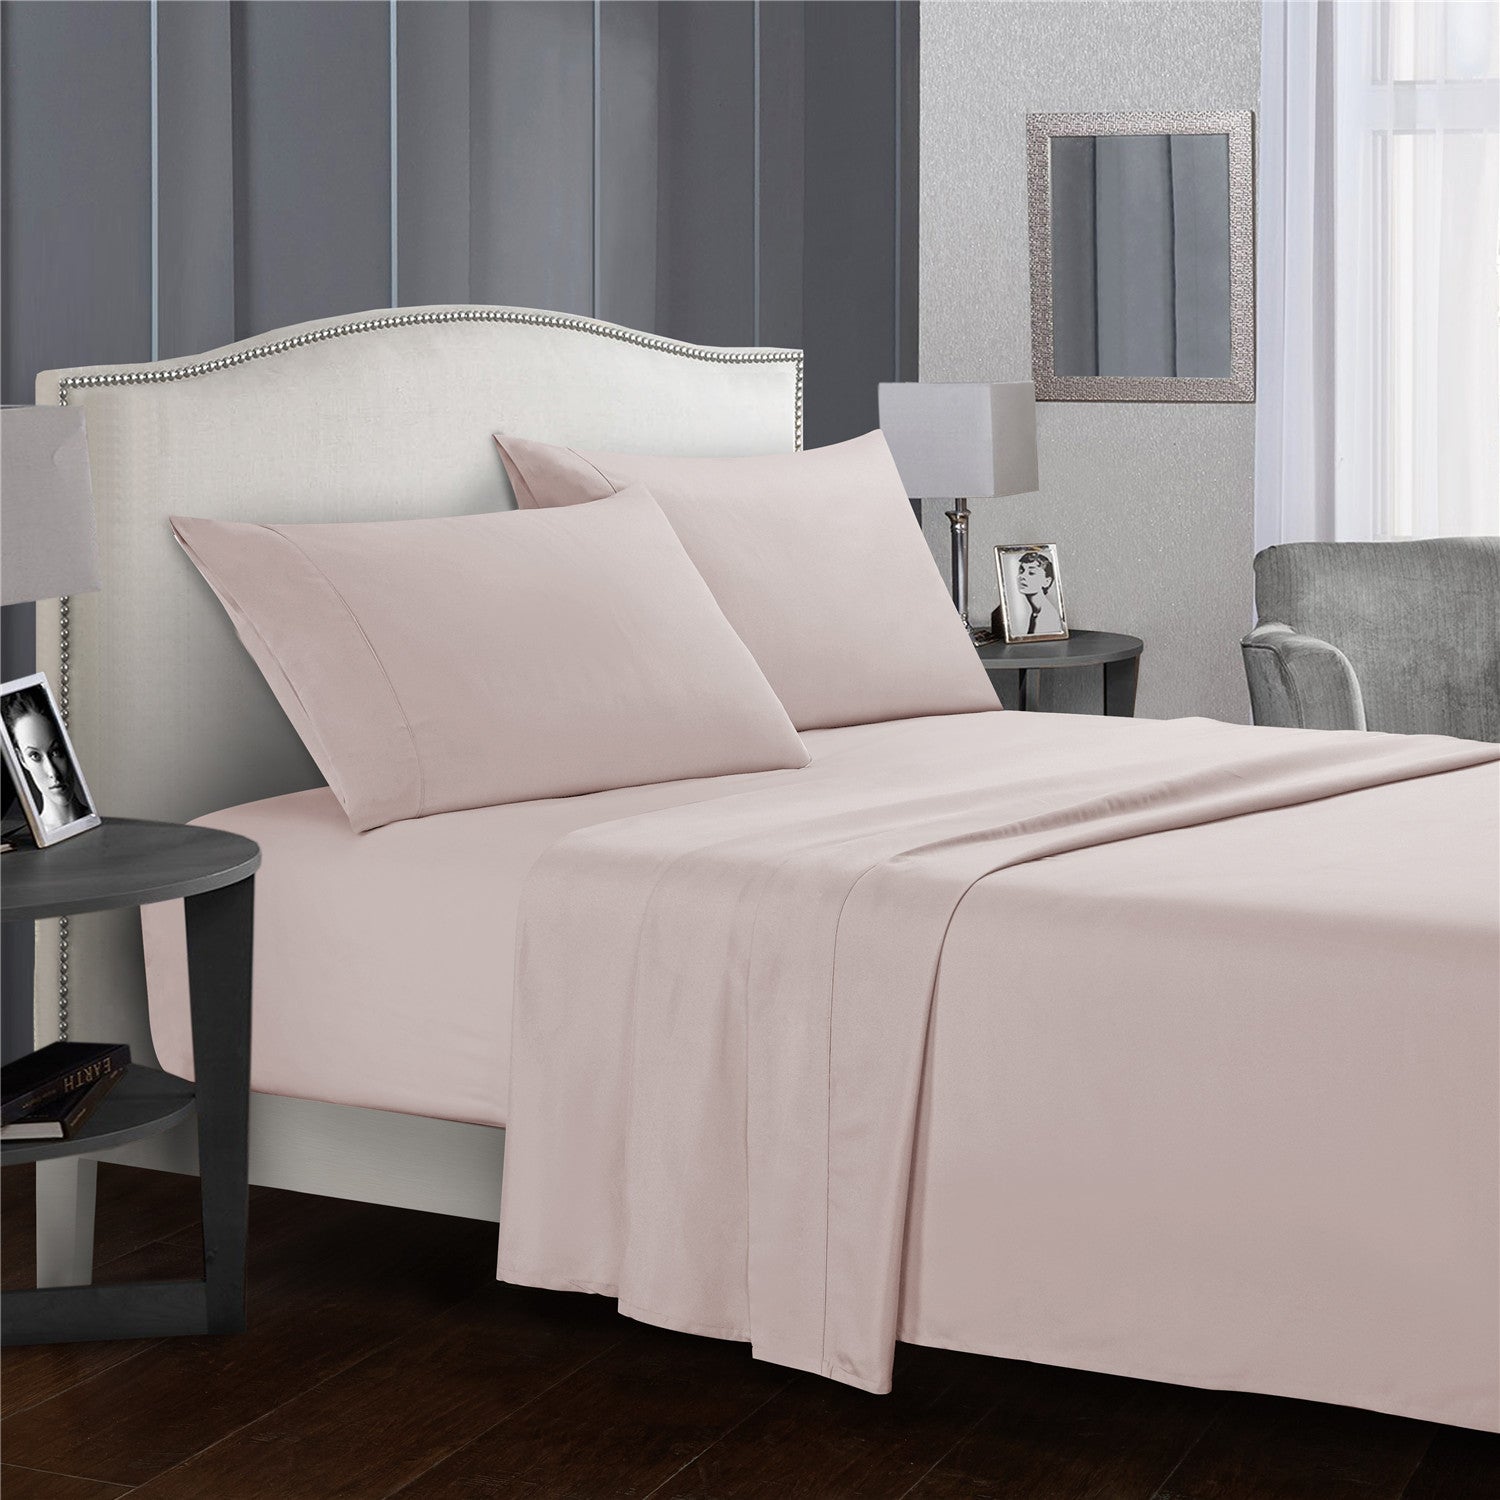 Comfy Bedsheet Set Brushed Microfiber 1800 Bedding - Wrinkle, Fade, Stain Resistant - 4 Piece